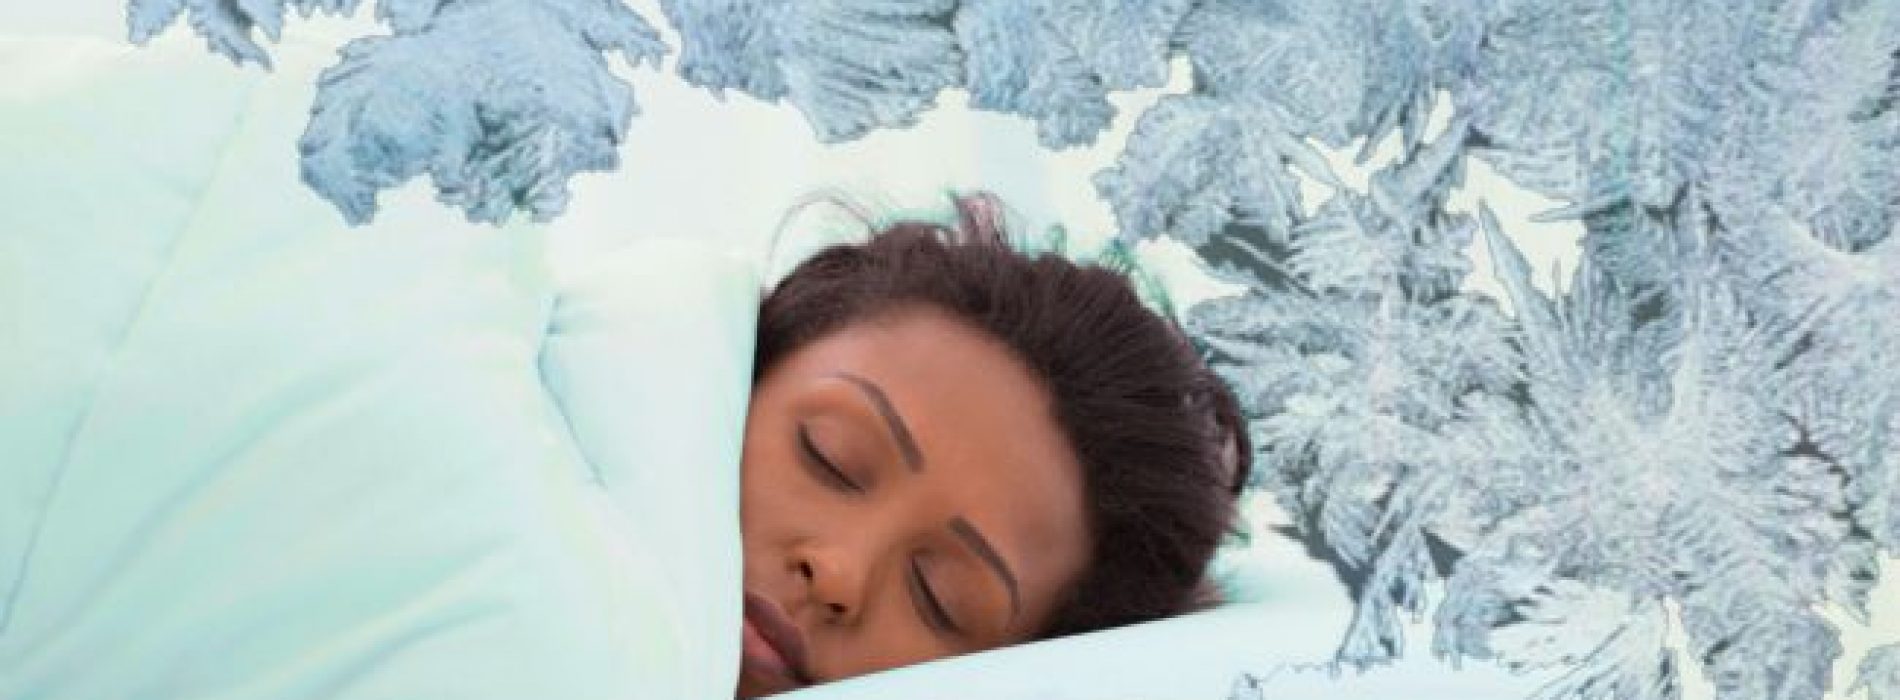 De wetenschap zegt dat slapen in een koude kamer beter is voor je gezondheid